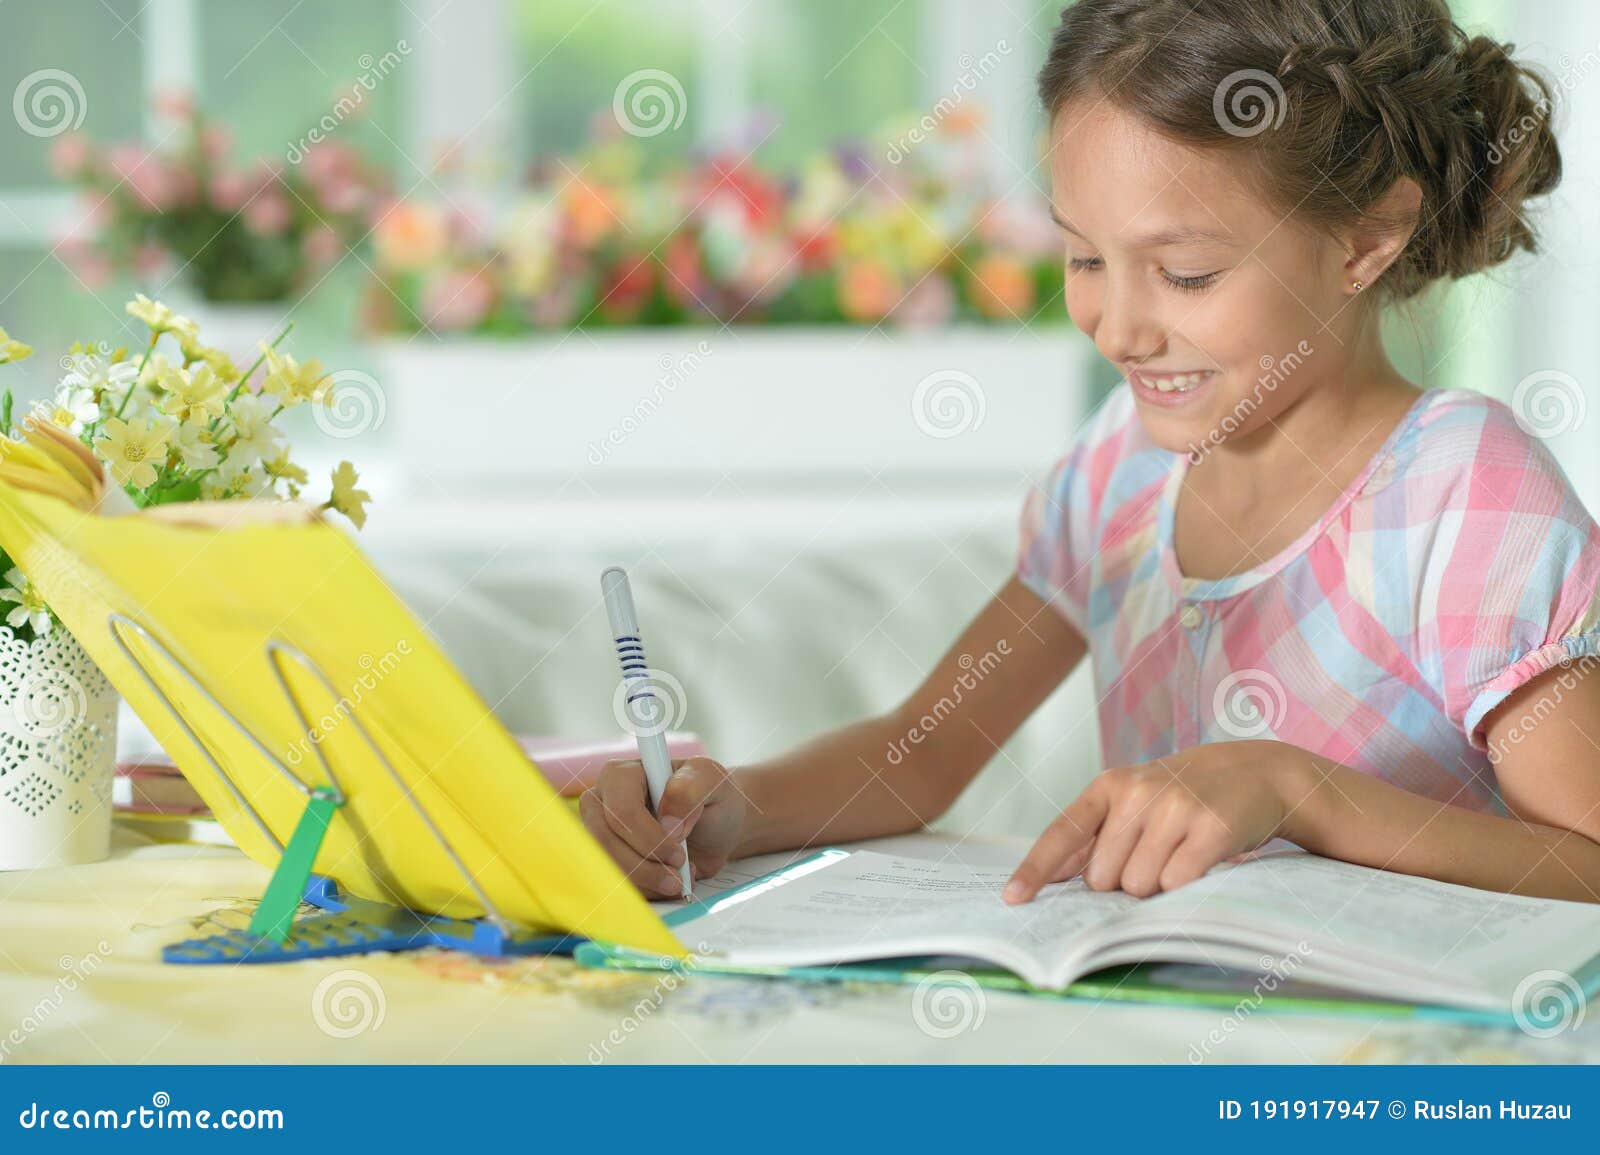 Portrait Of Cute Little Girl Doing Homework Stock Image 